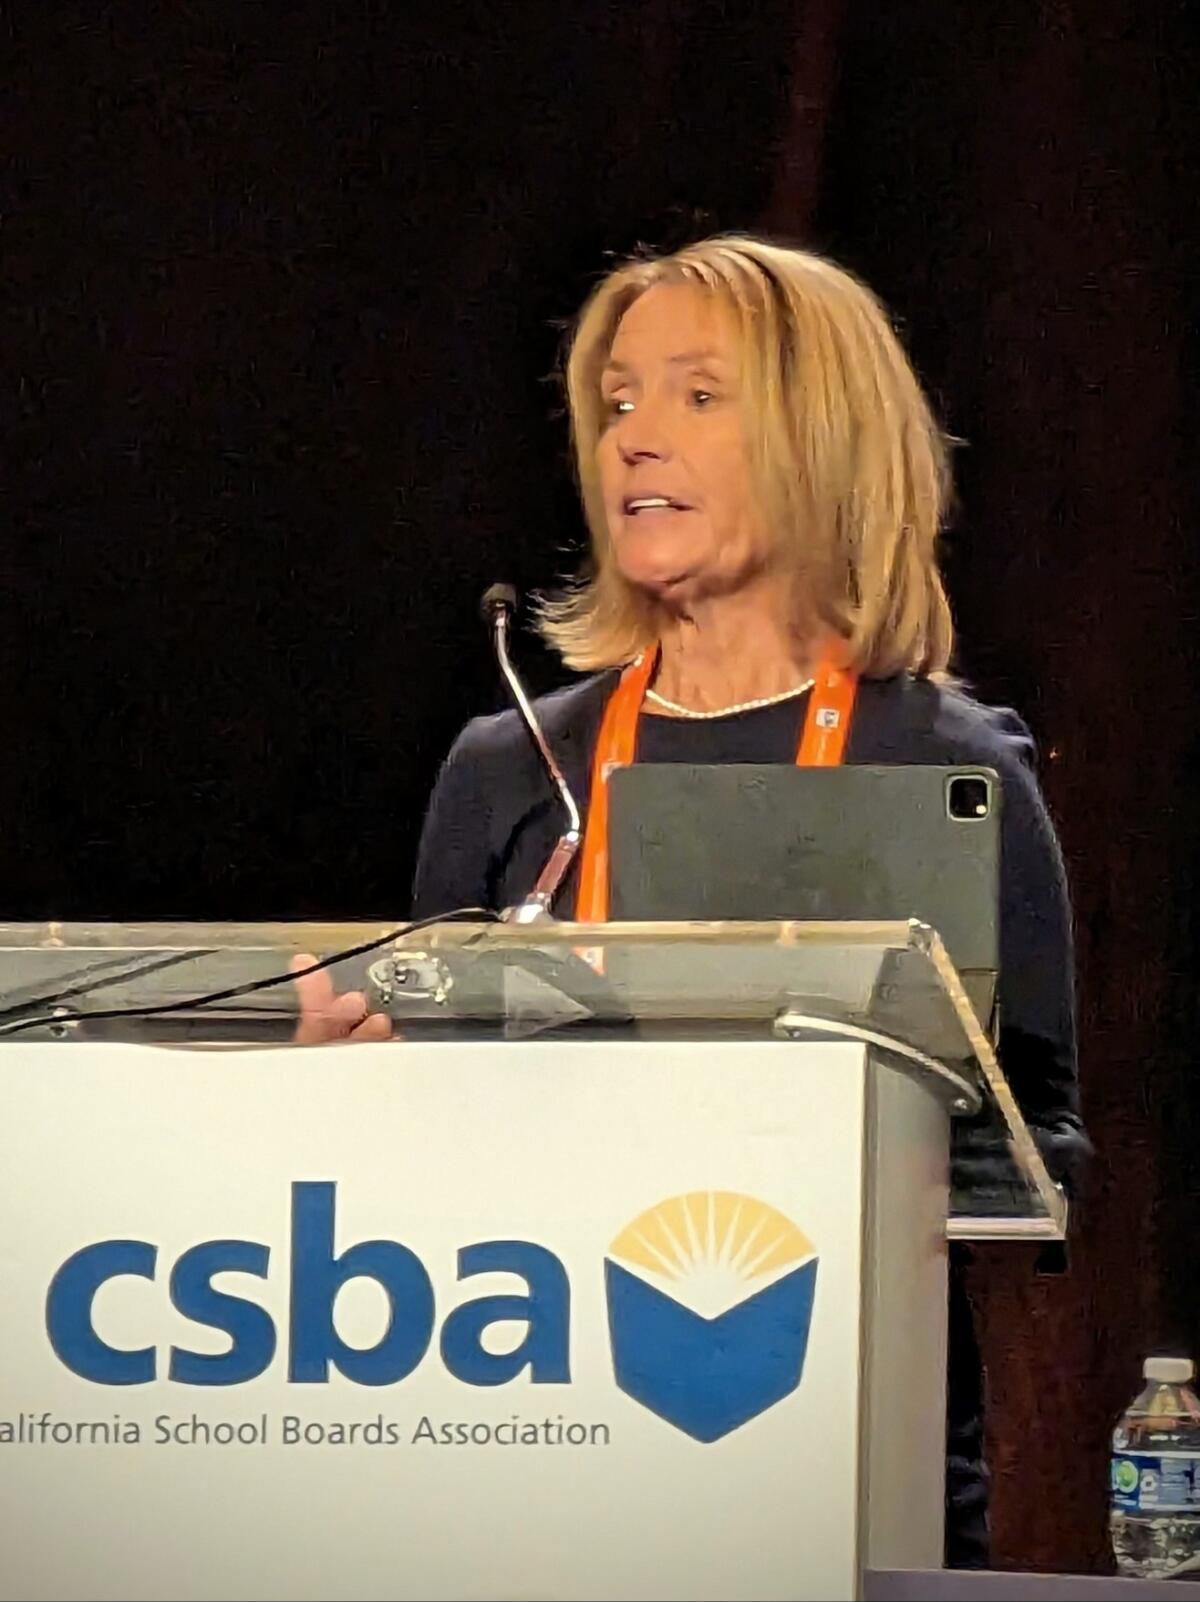 Debra Schade speaks at the CSBA Association.